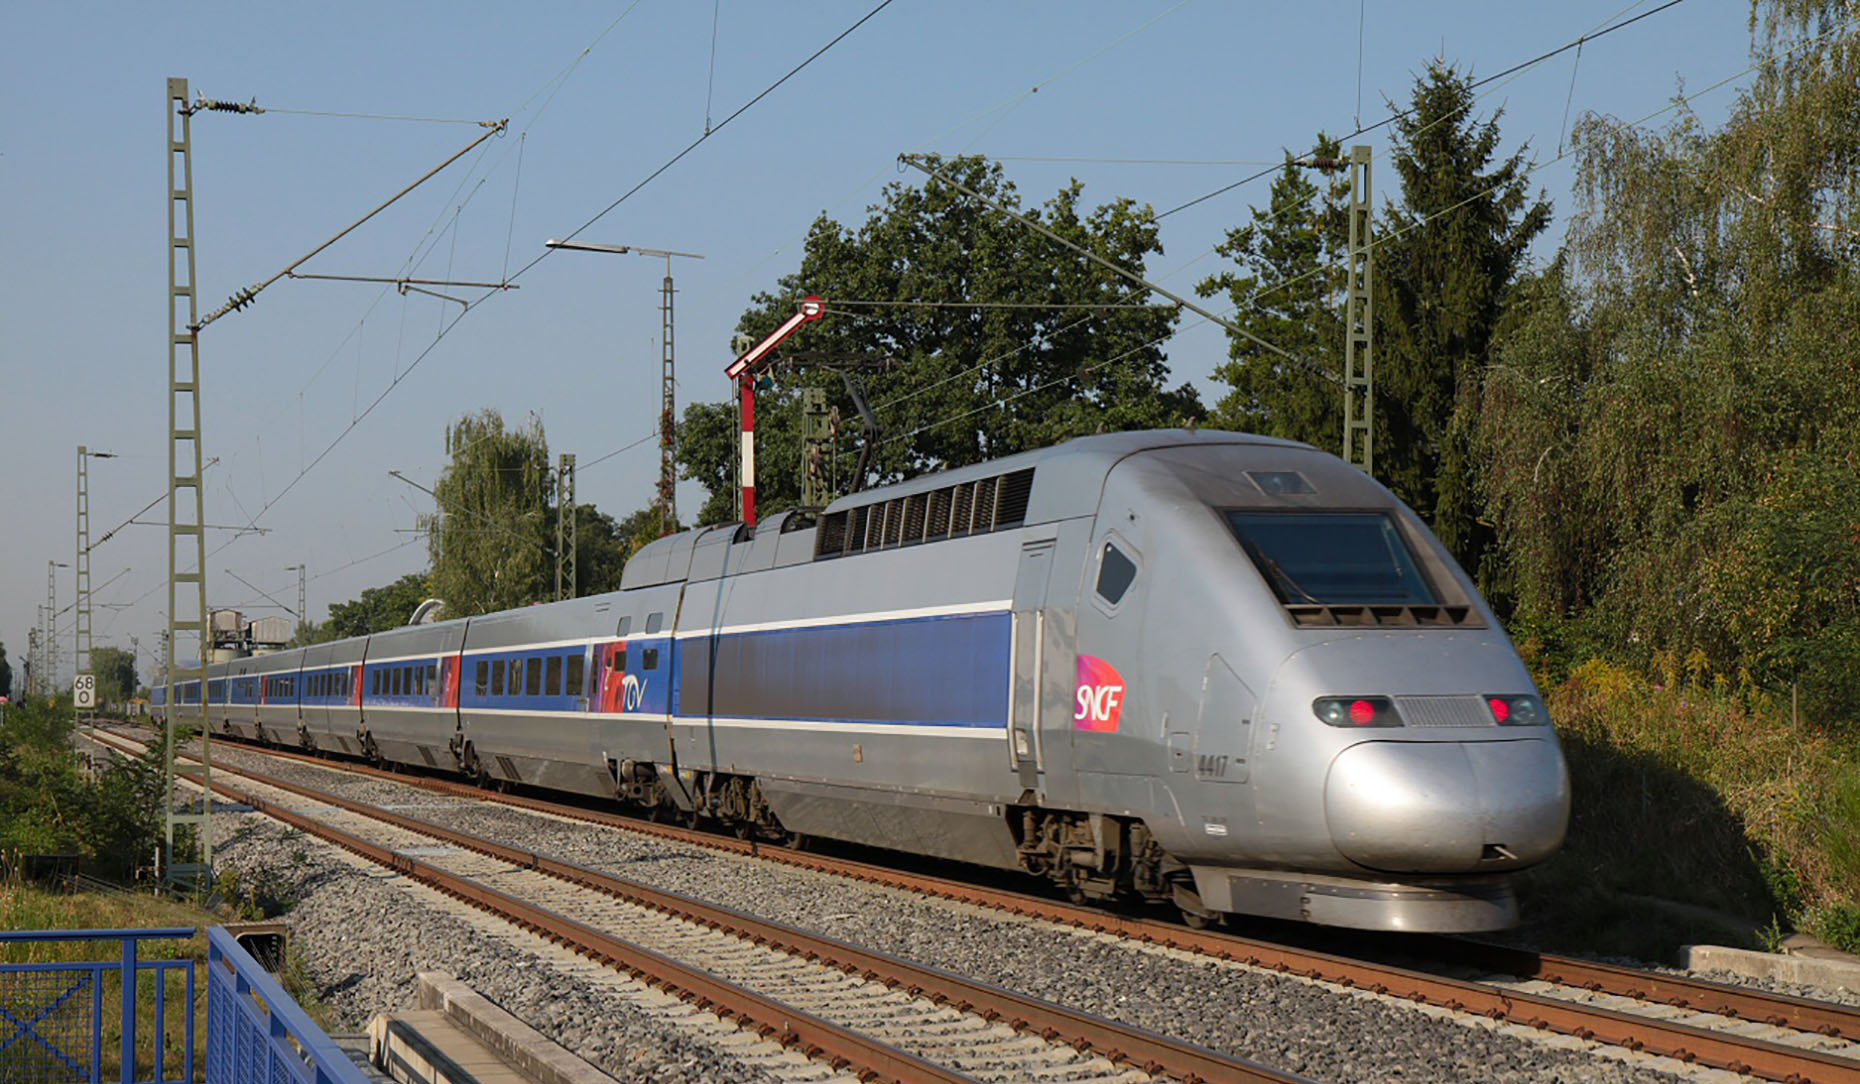 Le train est bénéfique pour la Planète. © Norbert Hüttisch, Karlsruhe, Wikimedia Commons, CC 3.0